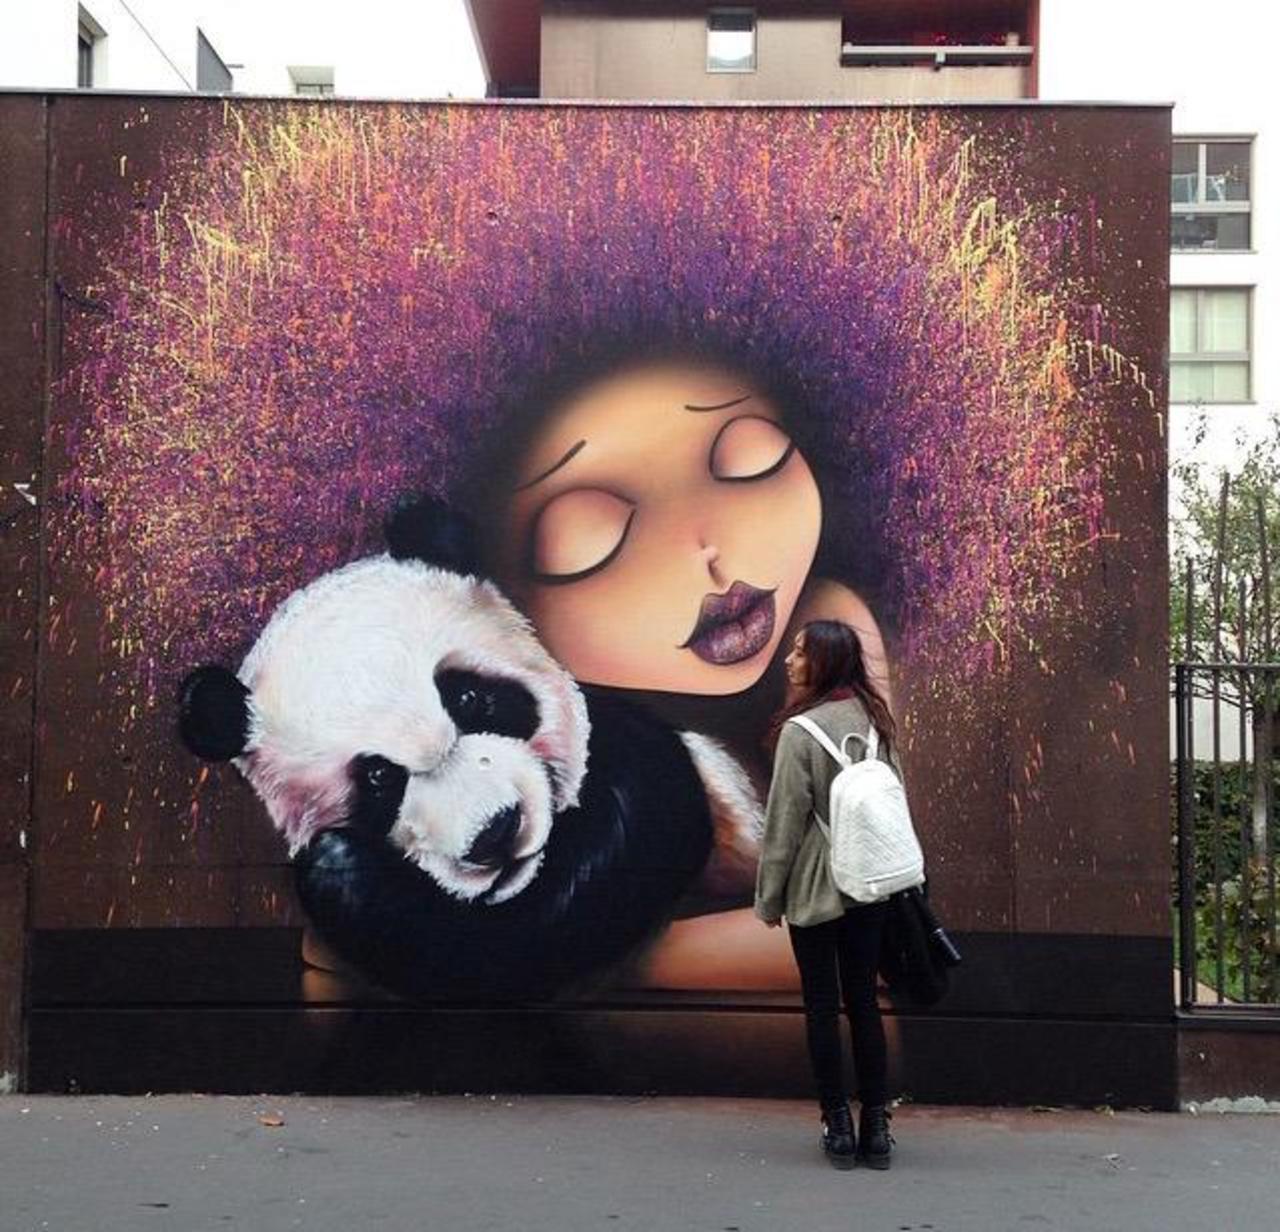 Street Art by VinieGraffiti in Paris 

#art #graffiti #mural #streetart http://t.co/LRB0aFSCiu